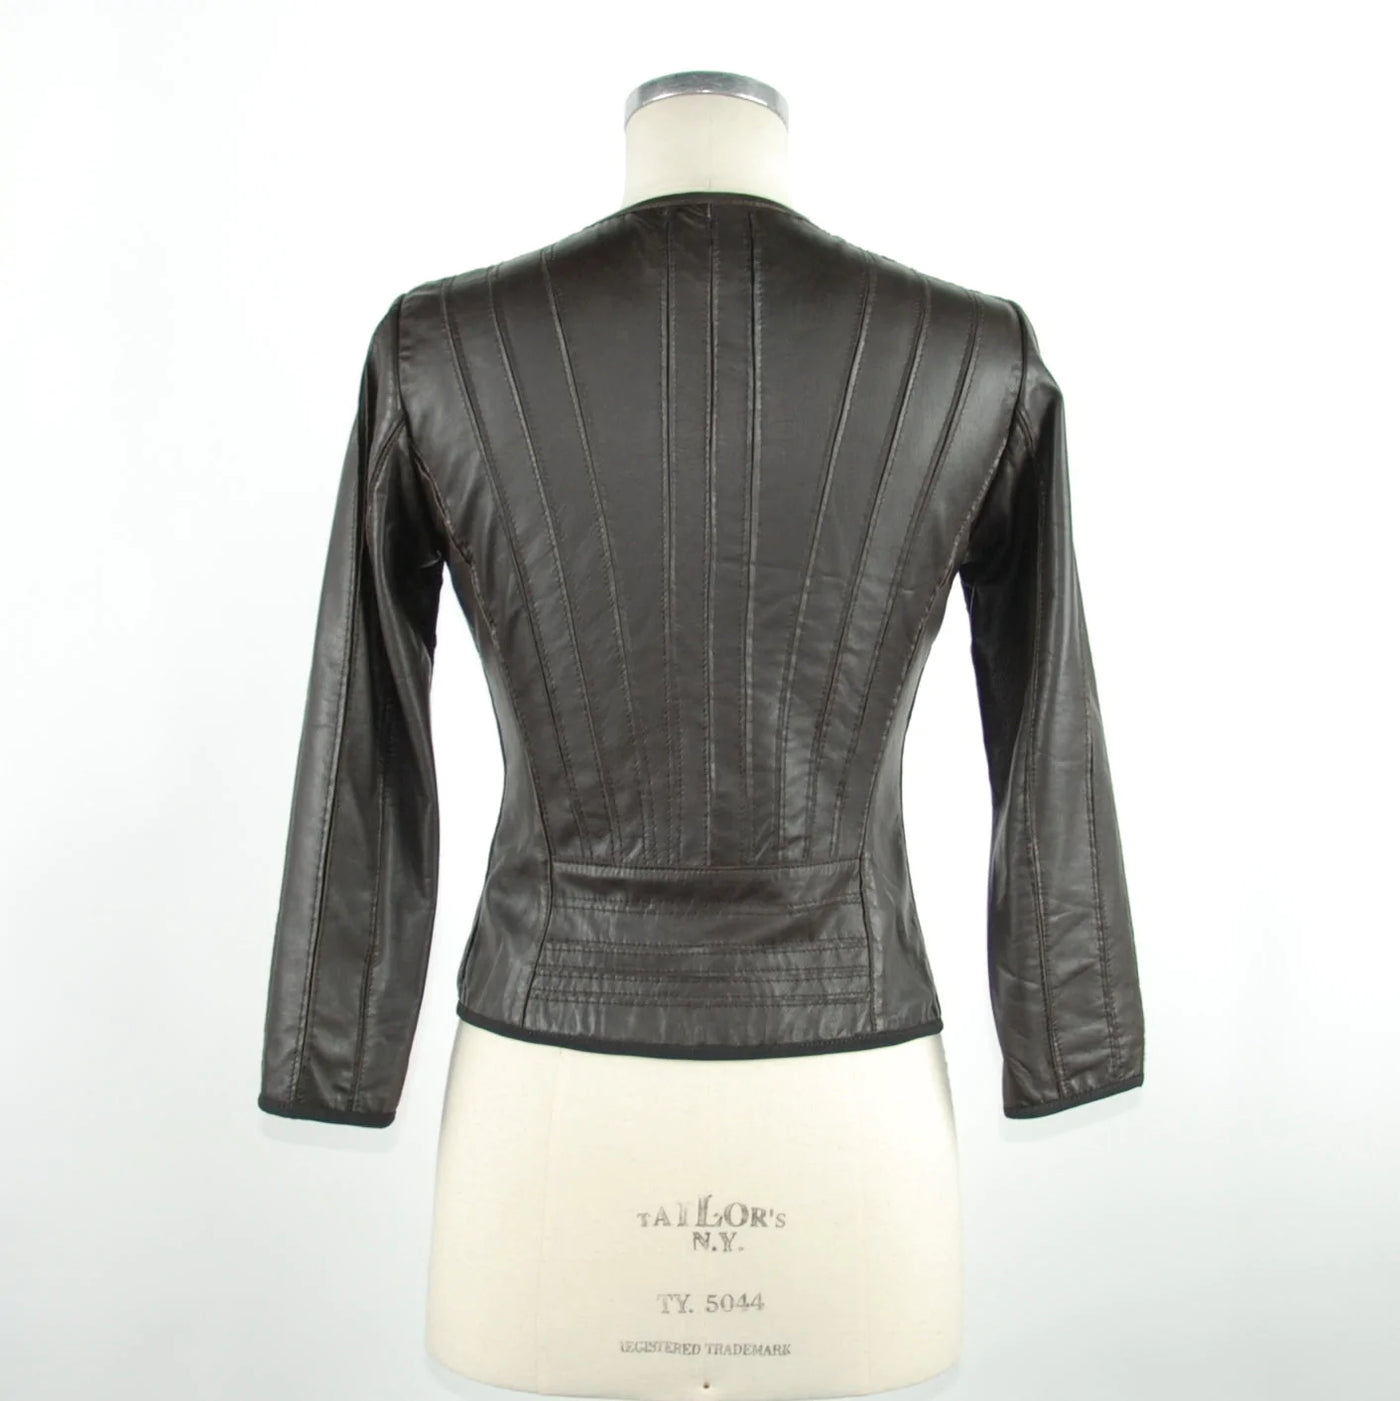 Emilio Roelli Black Genuine Leather Jackets & Coat Black, Emilio Romanelli, feed-1, IT42|M, IT46 | L, Jackets & Coats - Women - Clothing at SEYMAYKA